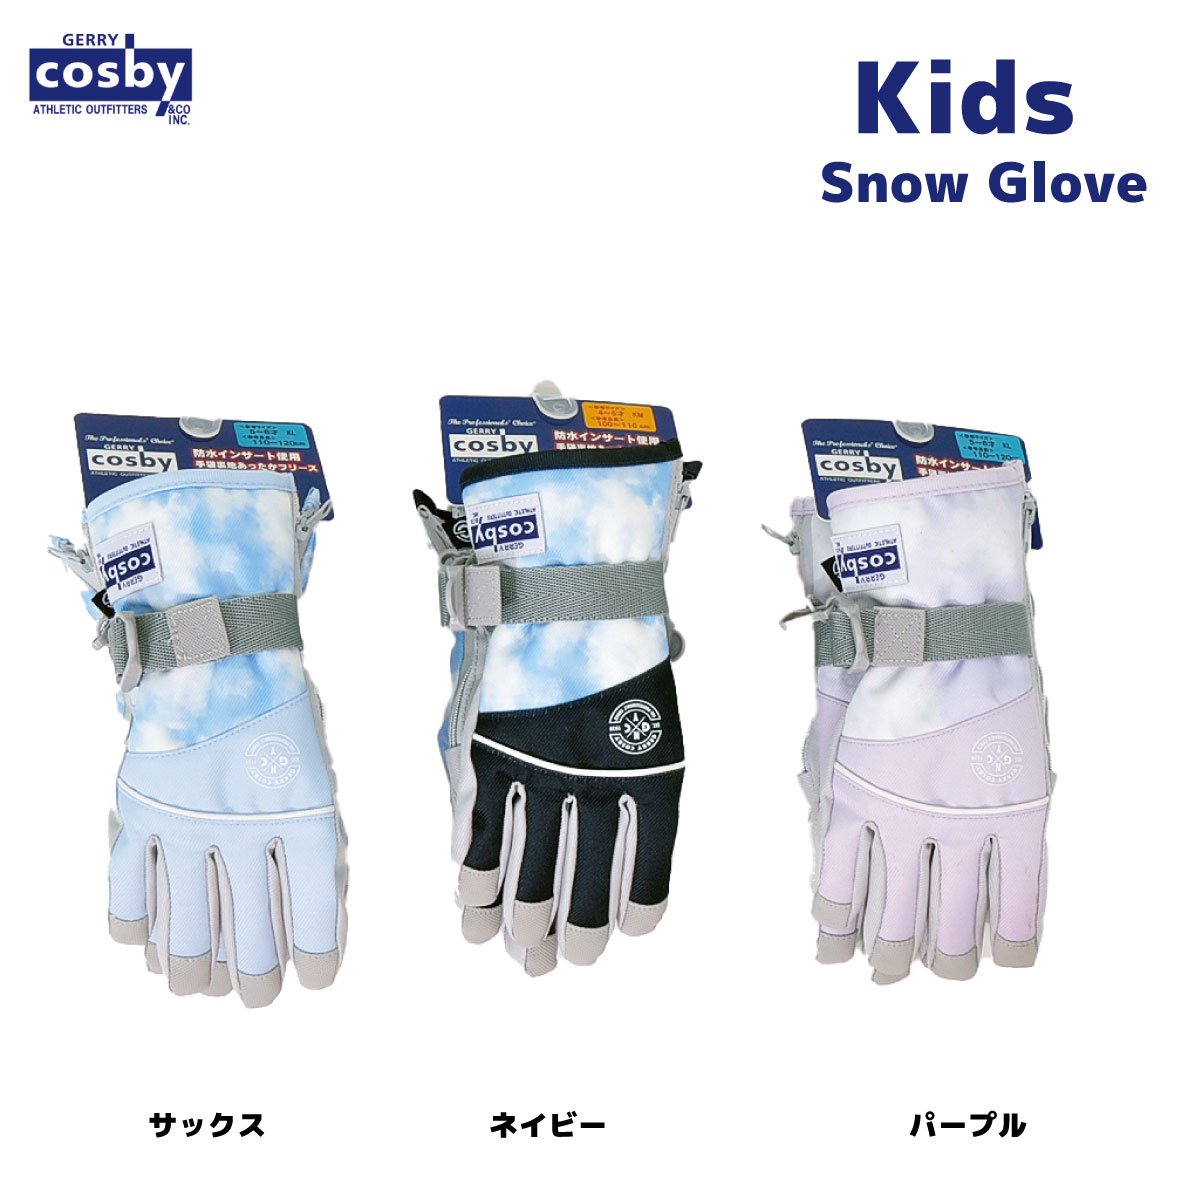 キッズスキーグローブ、スノーボードグローブ キッズSサイズ - 手袋